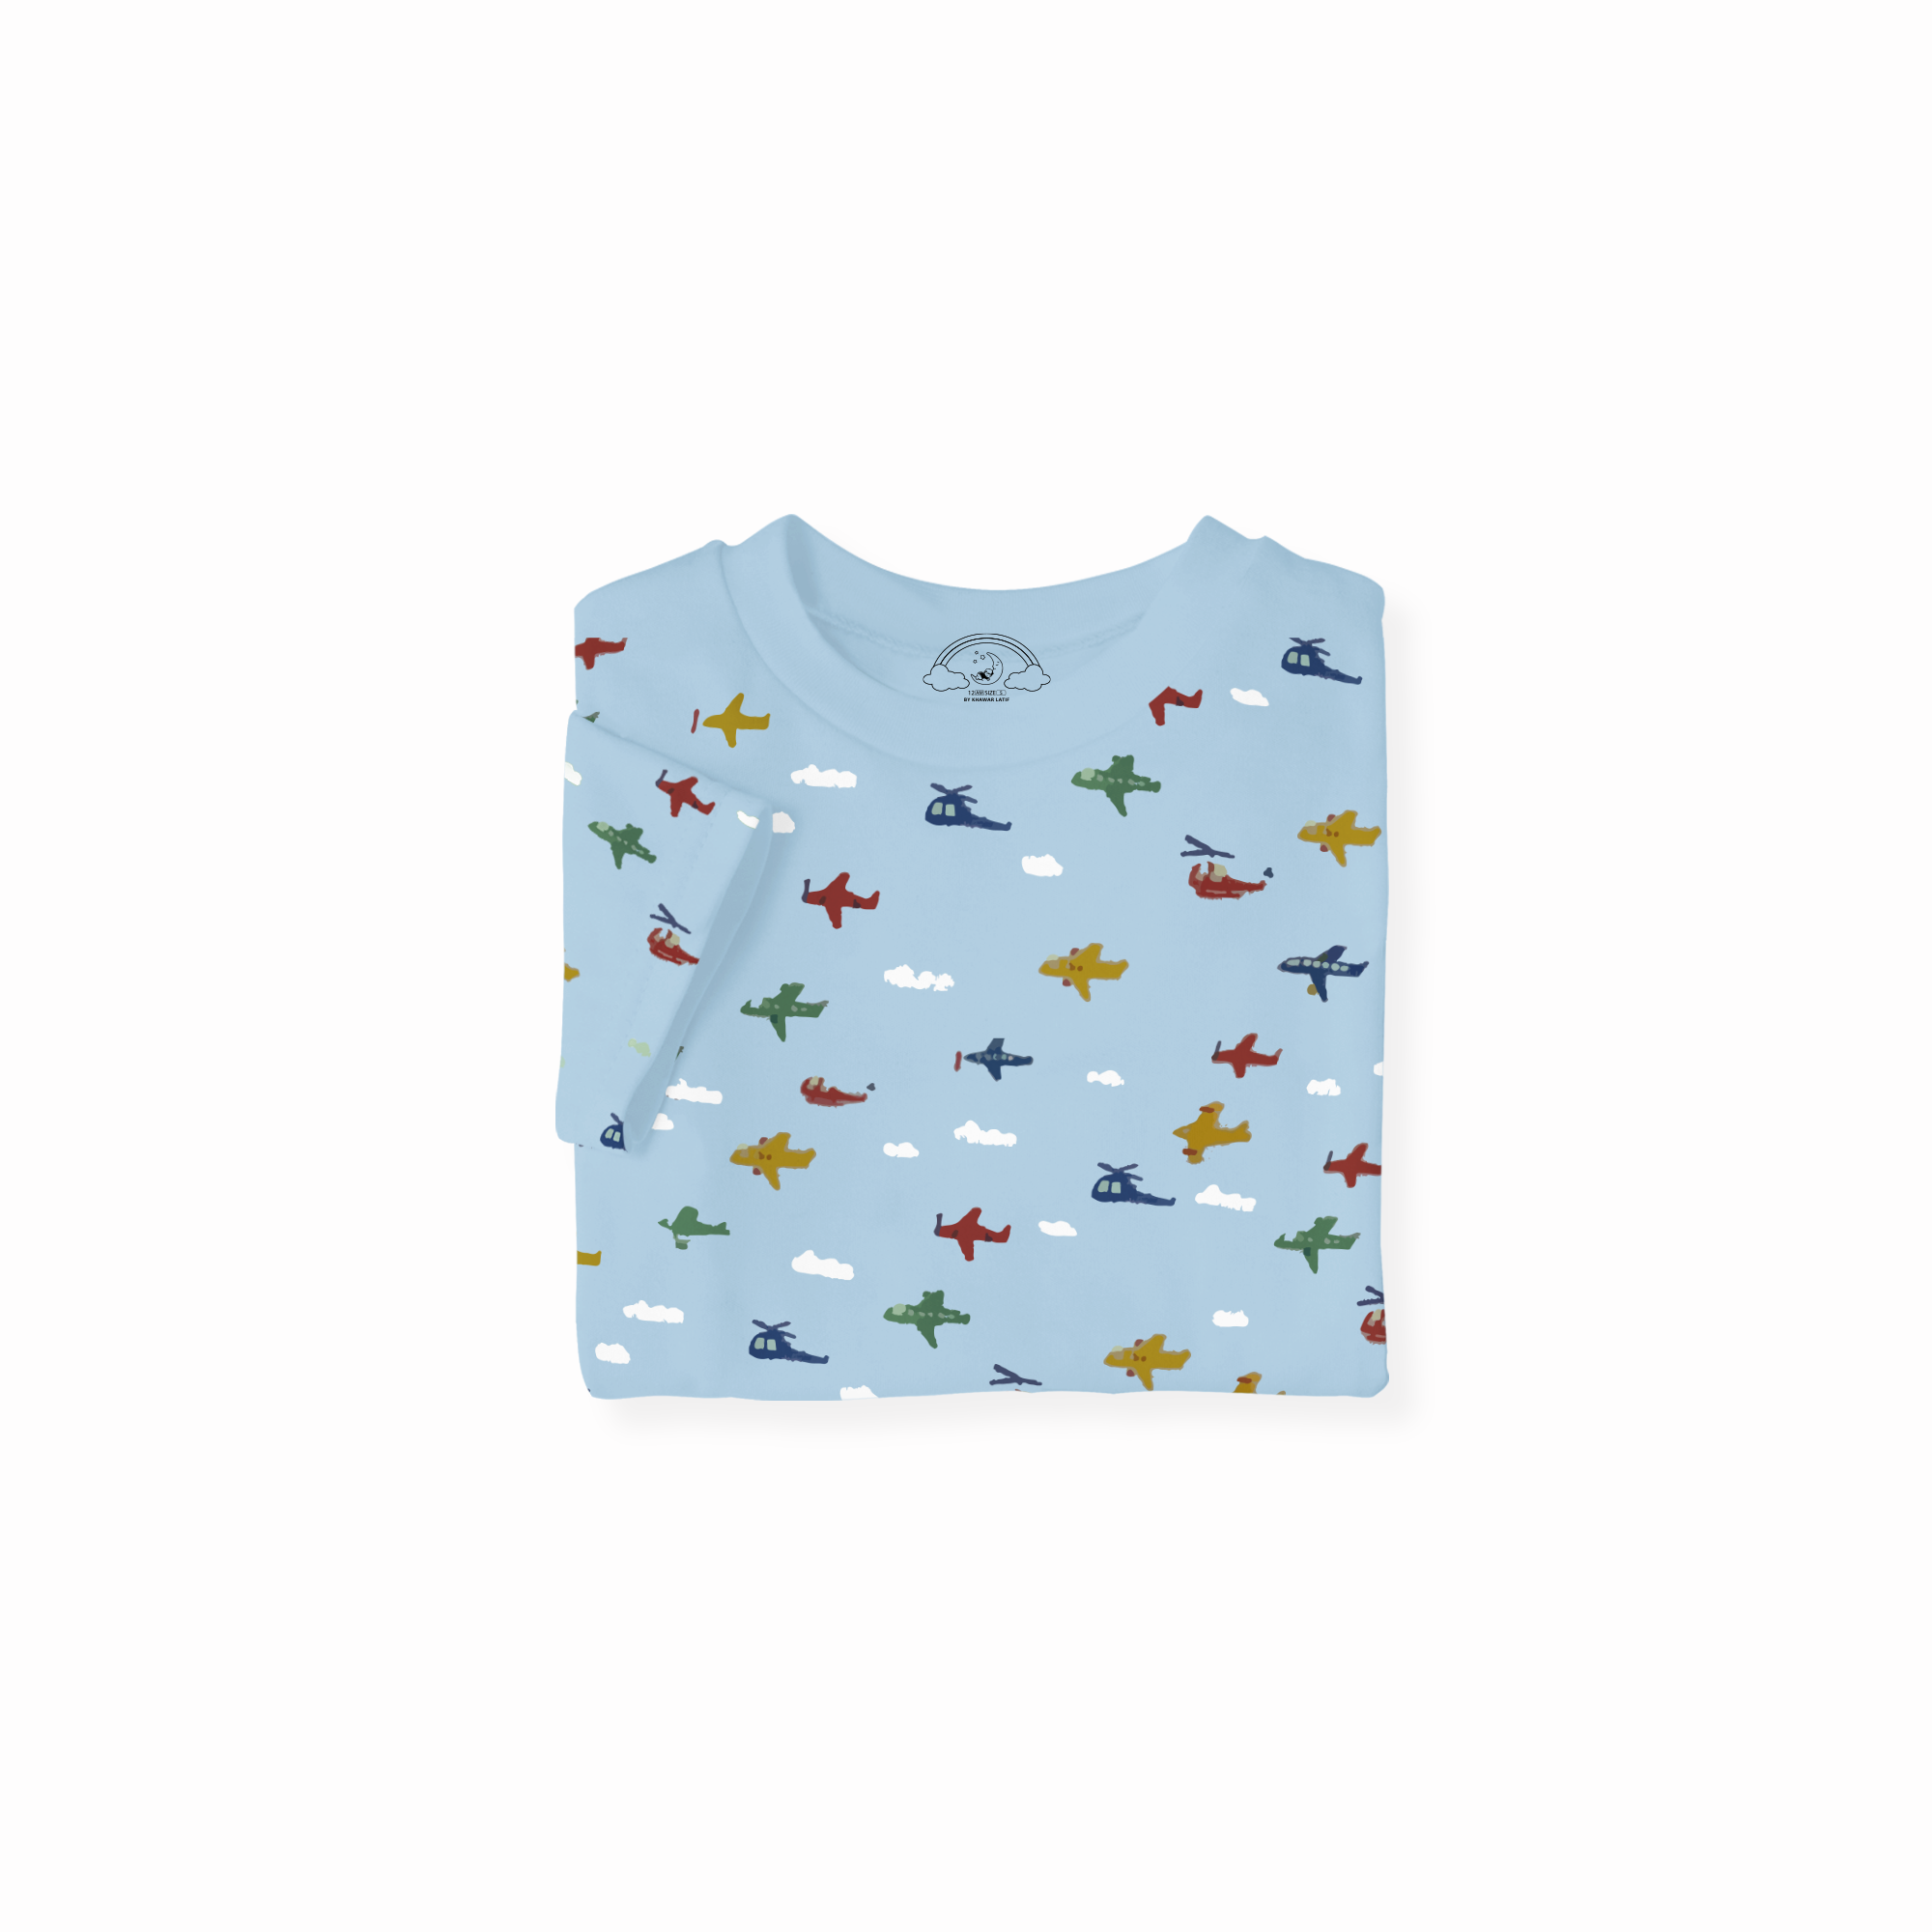 Airplane print  Kids Pajamas